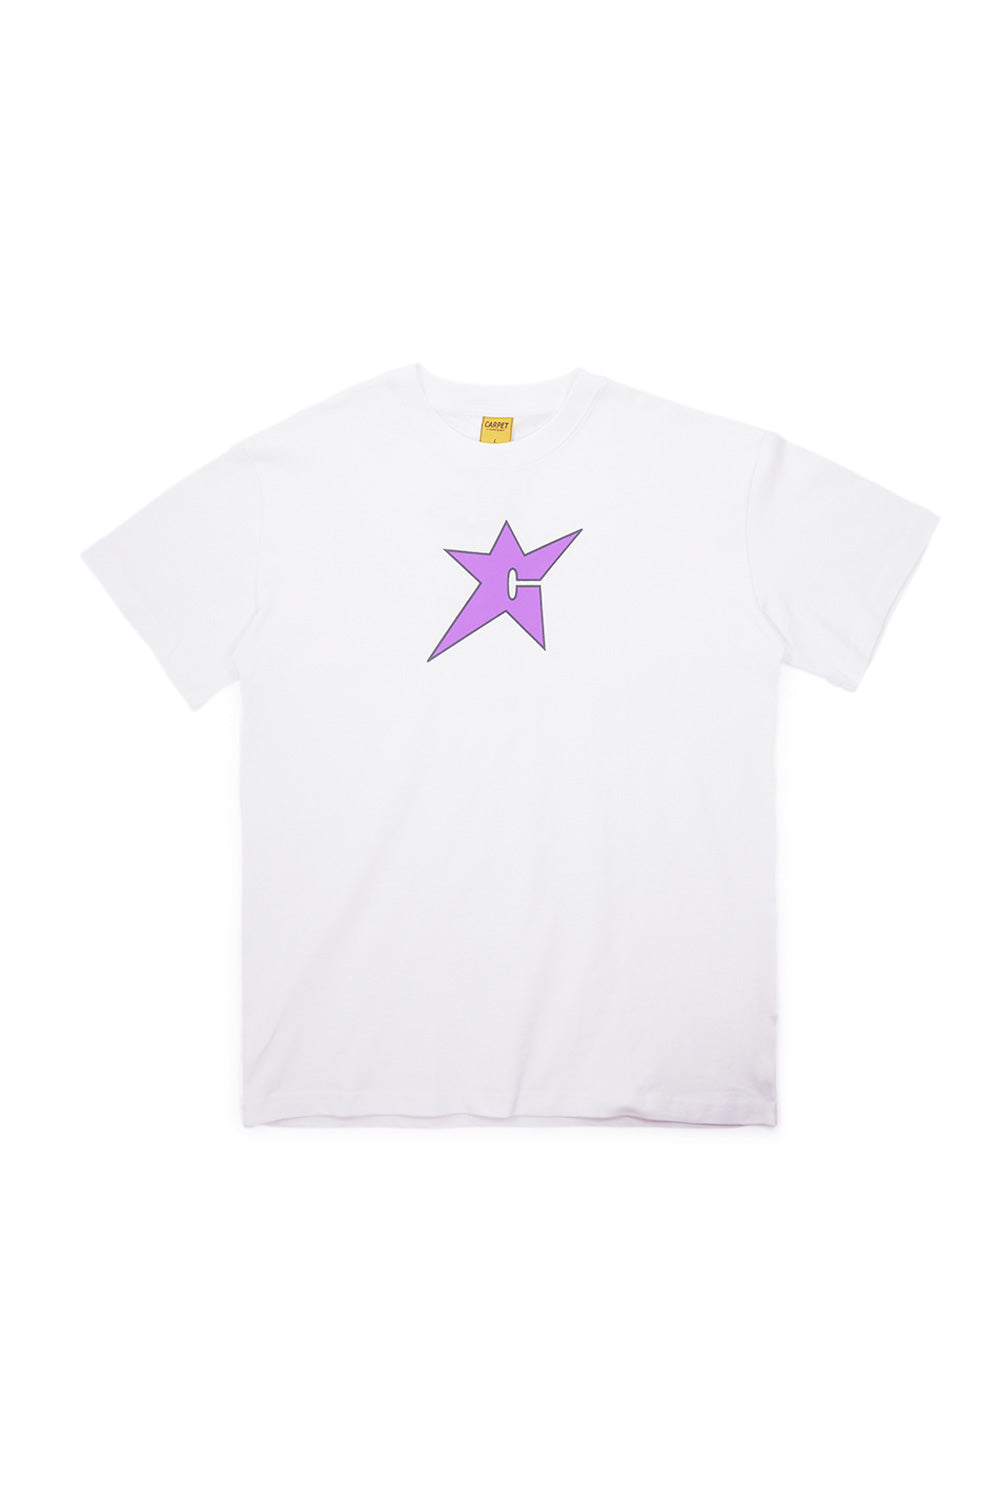 Carpet Company C-Star T-Shirt White (Purple Print) - BONKERS